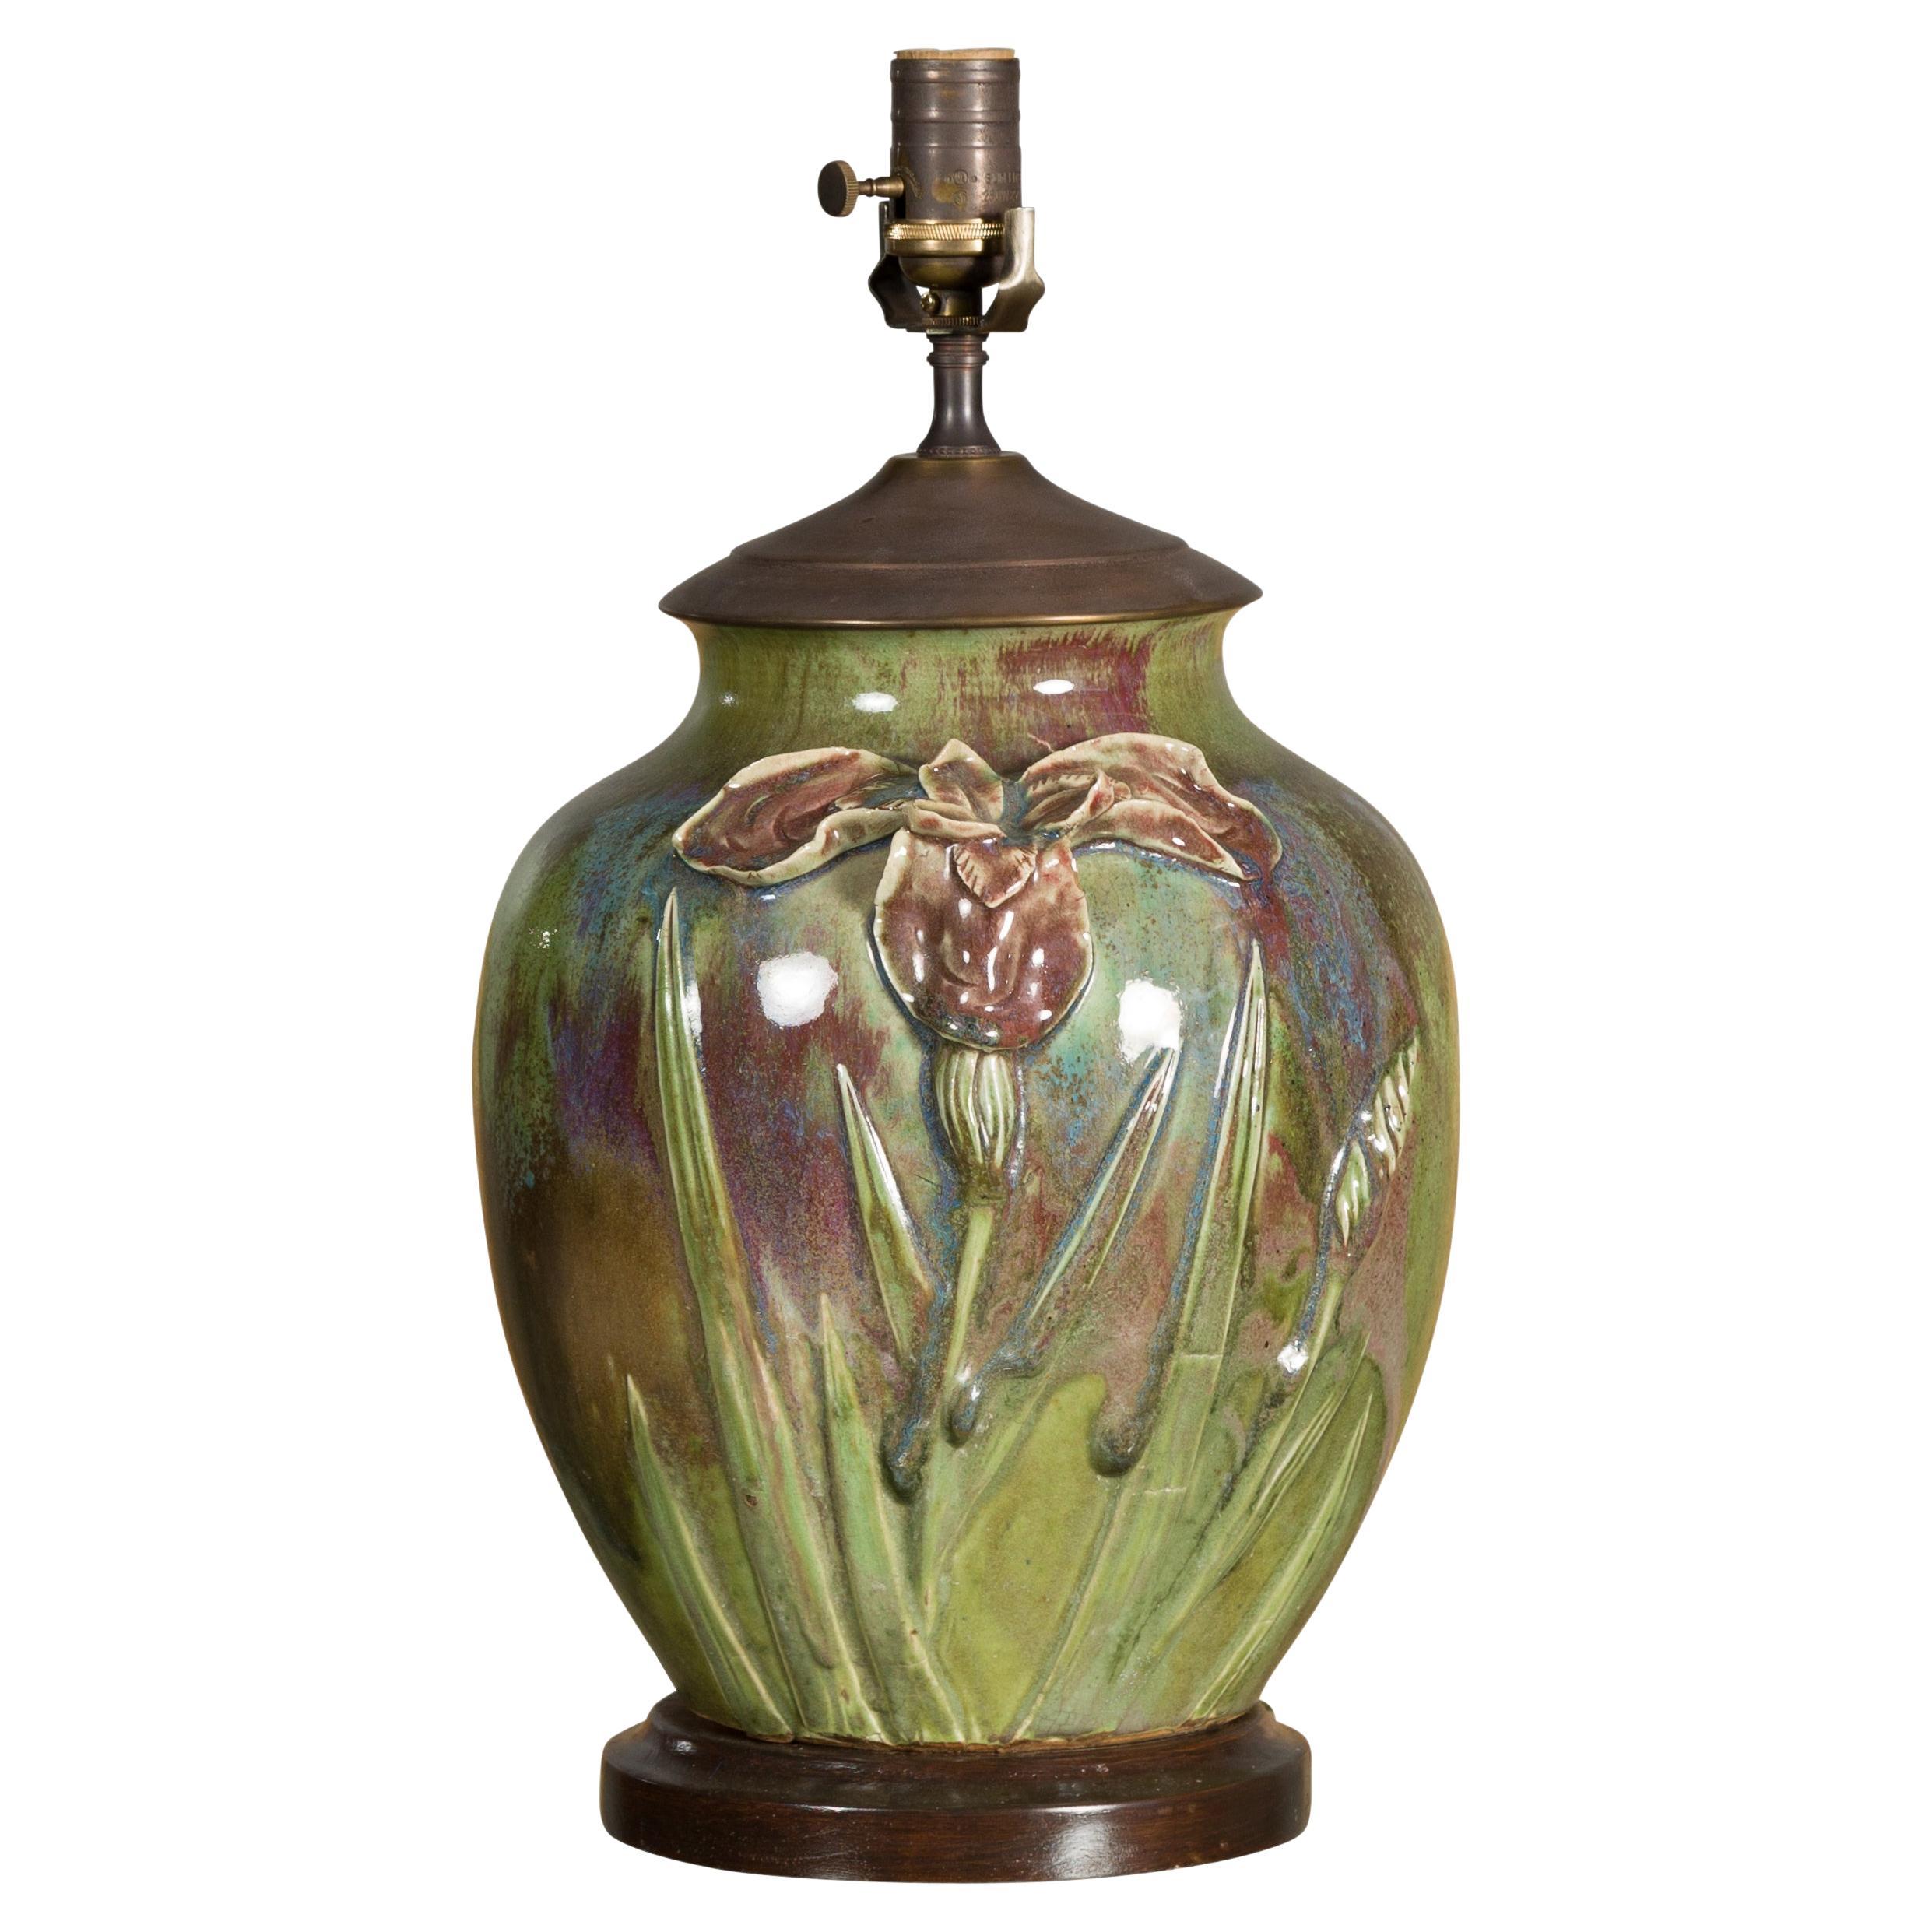 Lampe de table en poterie verte des années 1920 avec motif floral en relief sur socle en bois, câblée